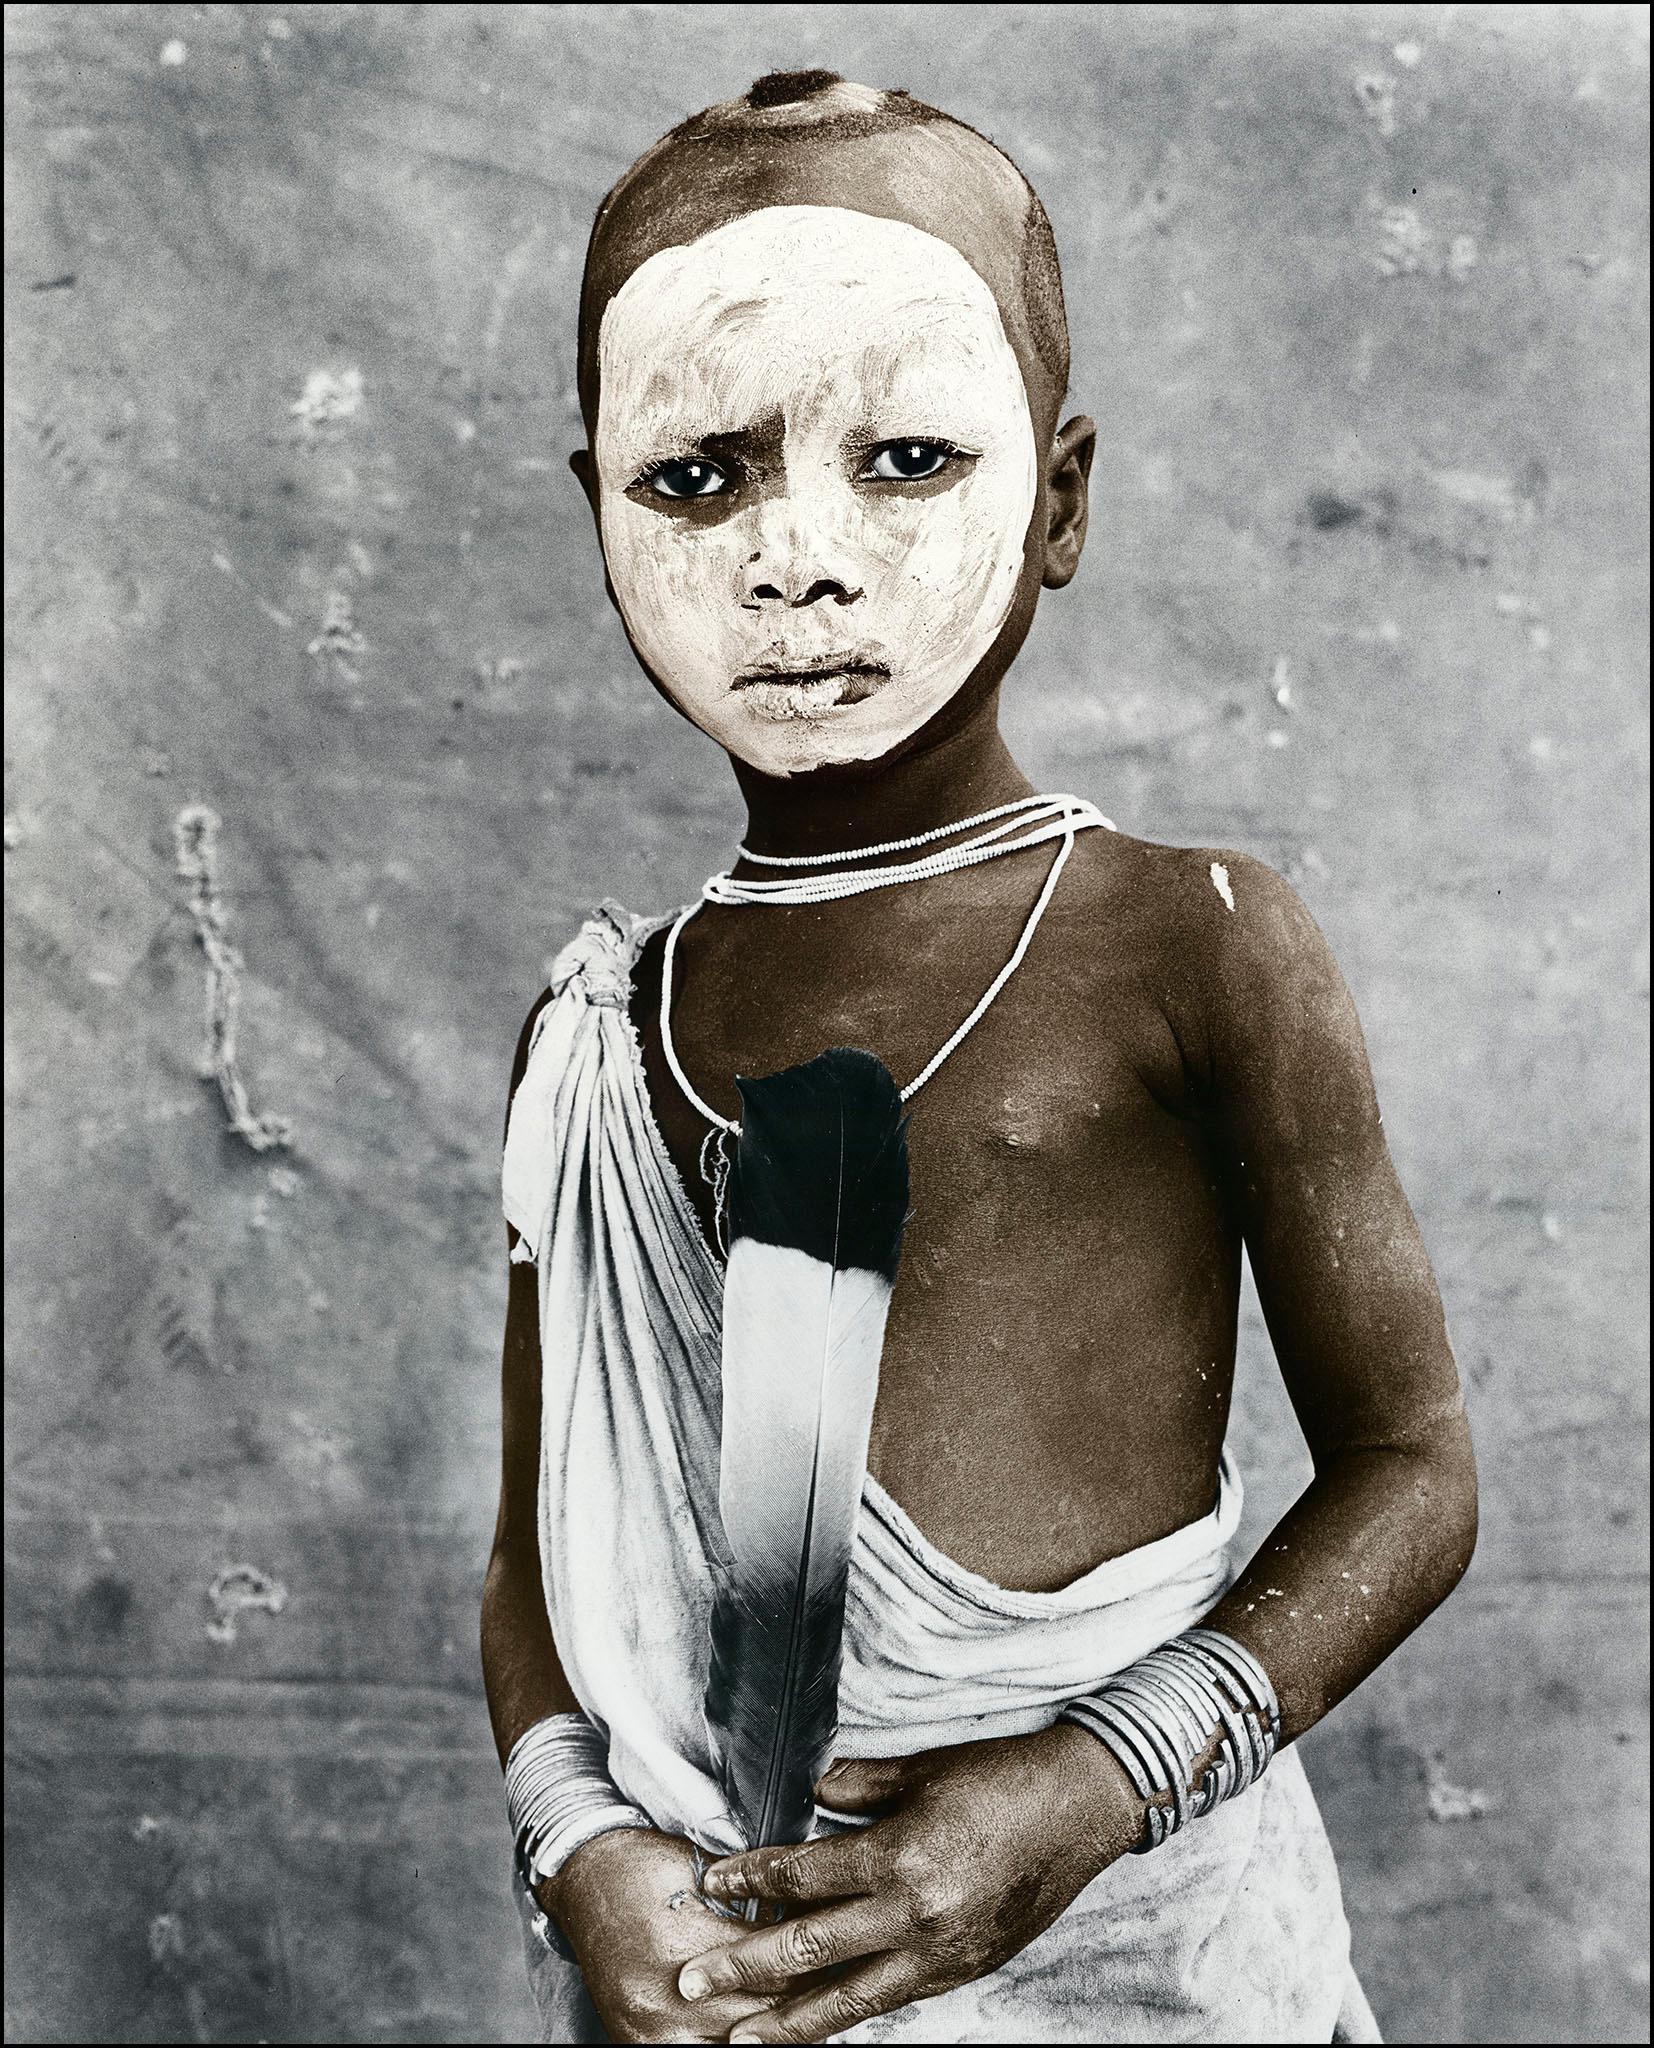 Portrait Photograph Jan C. Schlegel - Olekibo, Suri, Éthiopie, gélatine d'argent, photographie, contemporain